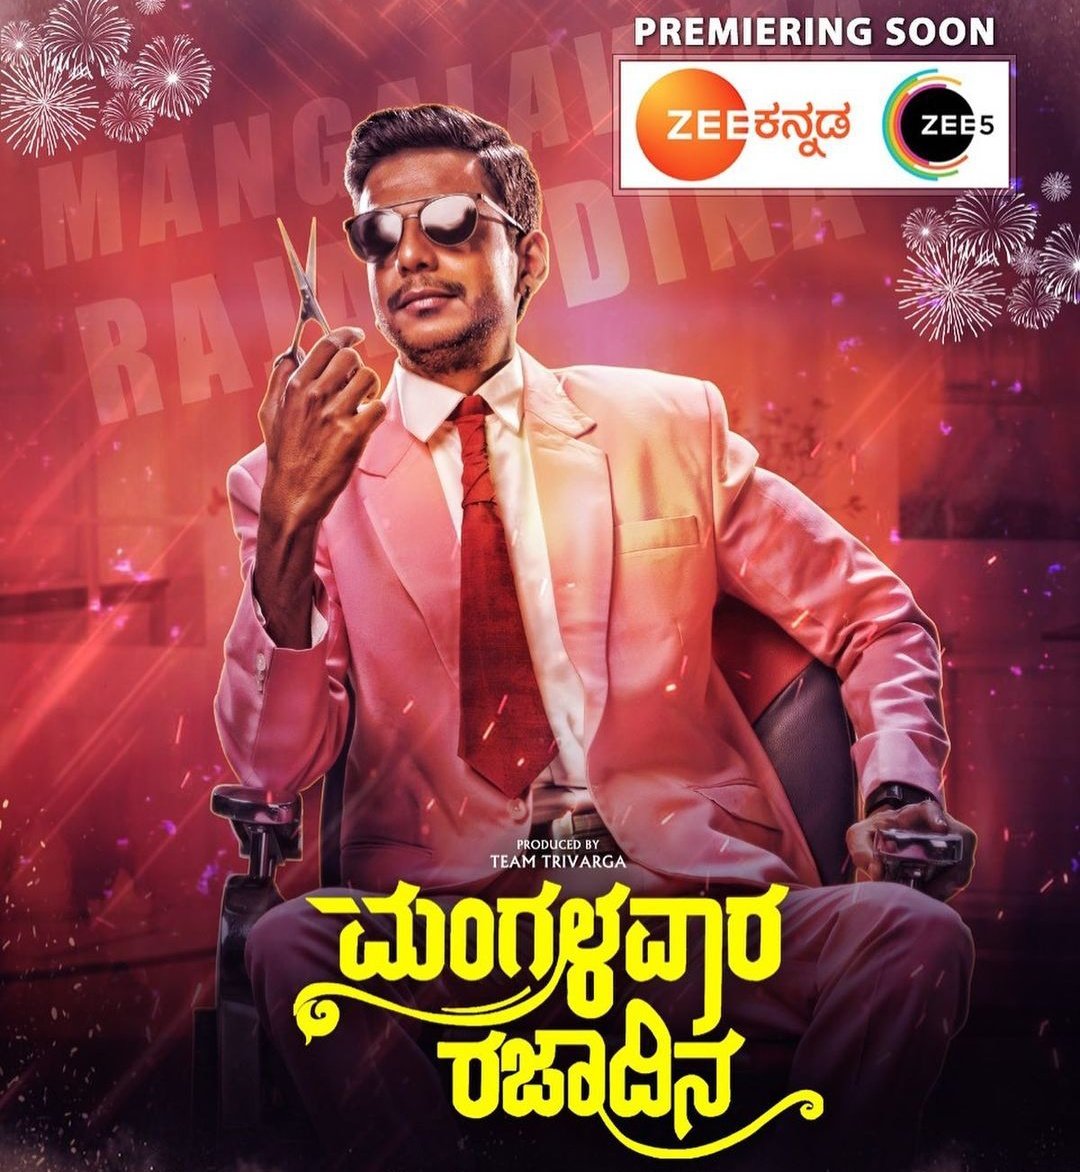 Kannada Film #MangalavaraRajadina Digital & Television Premiere Soon ZEE5